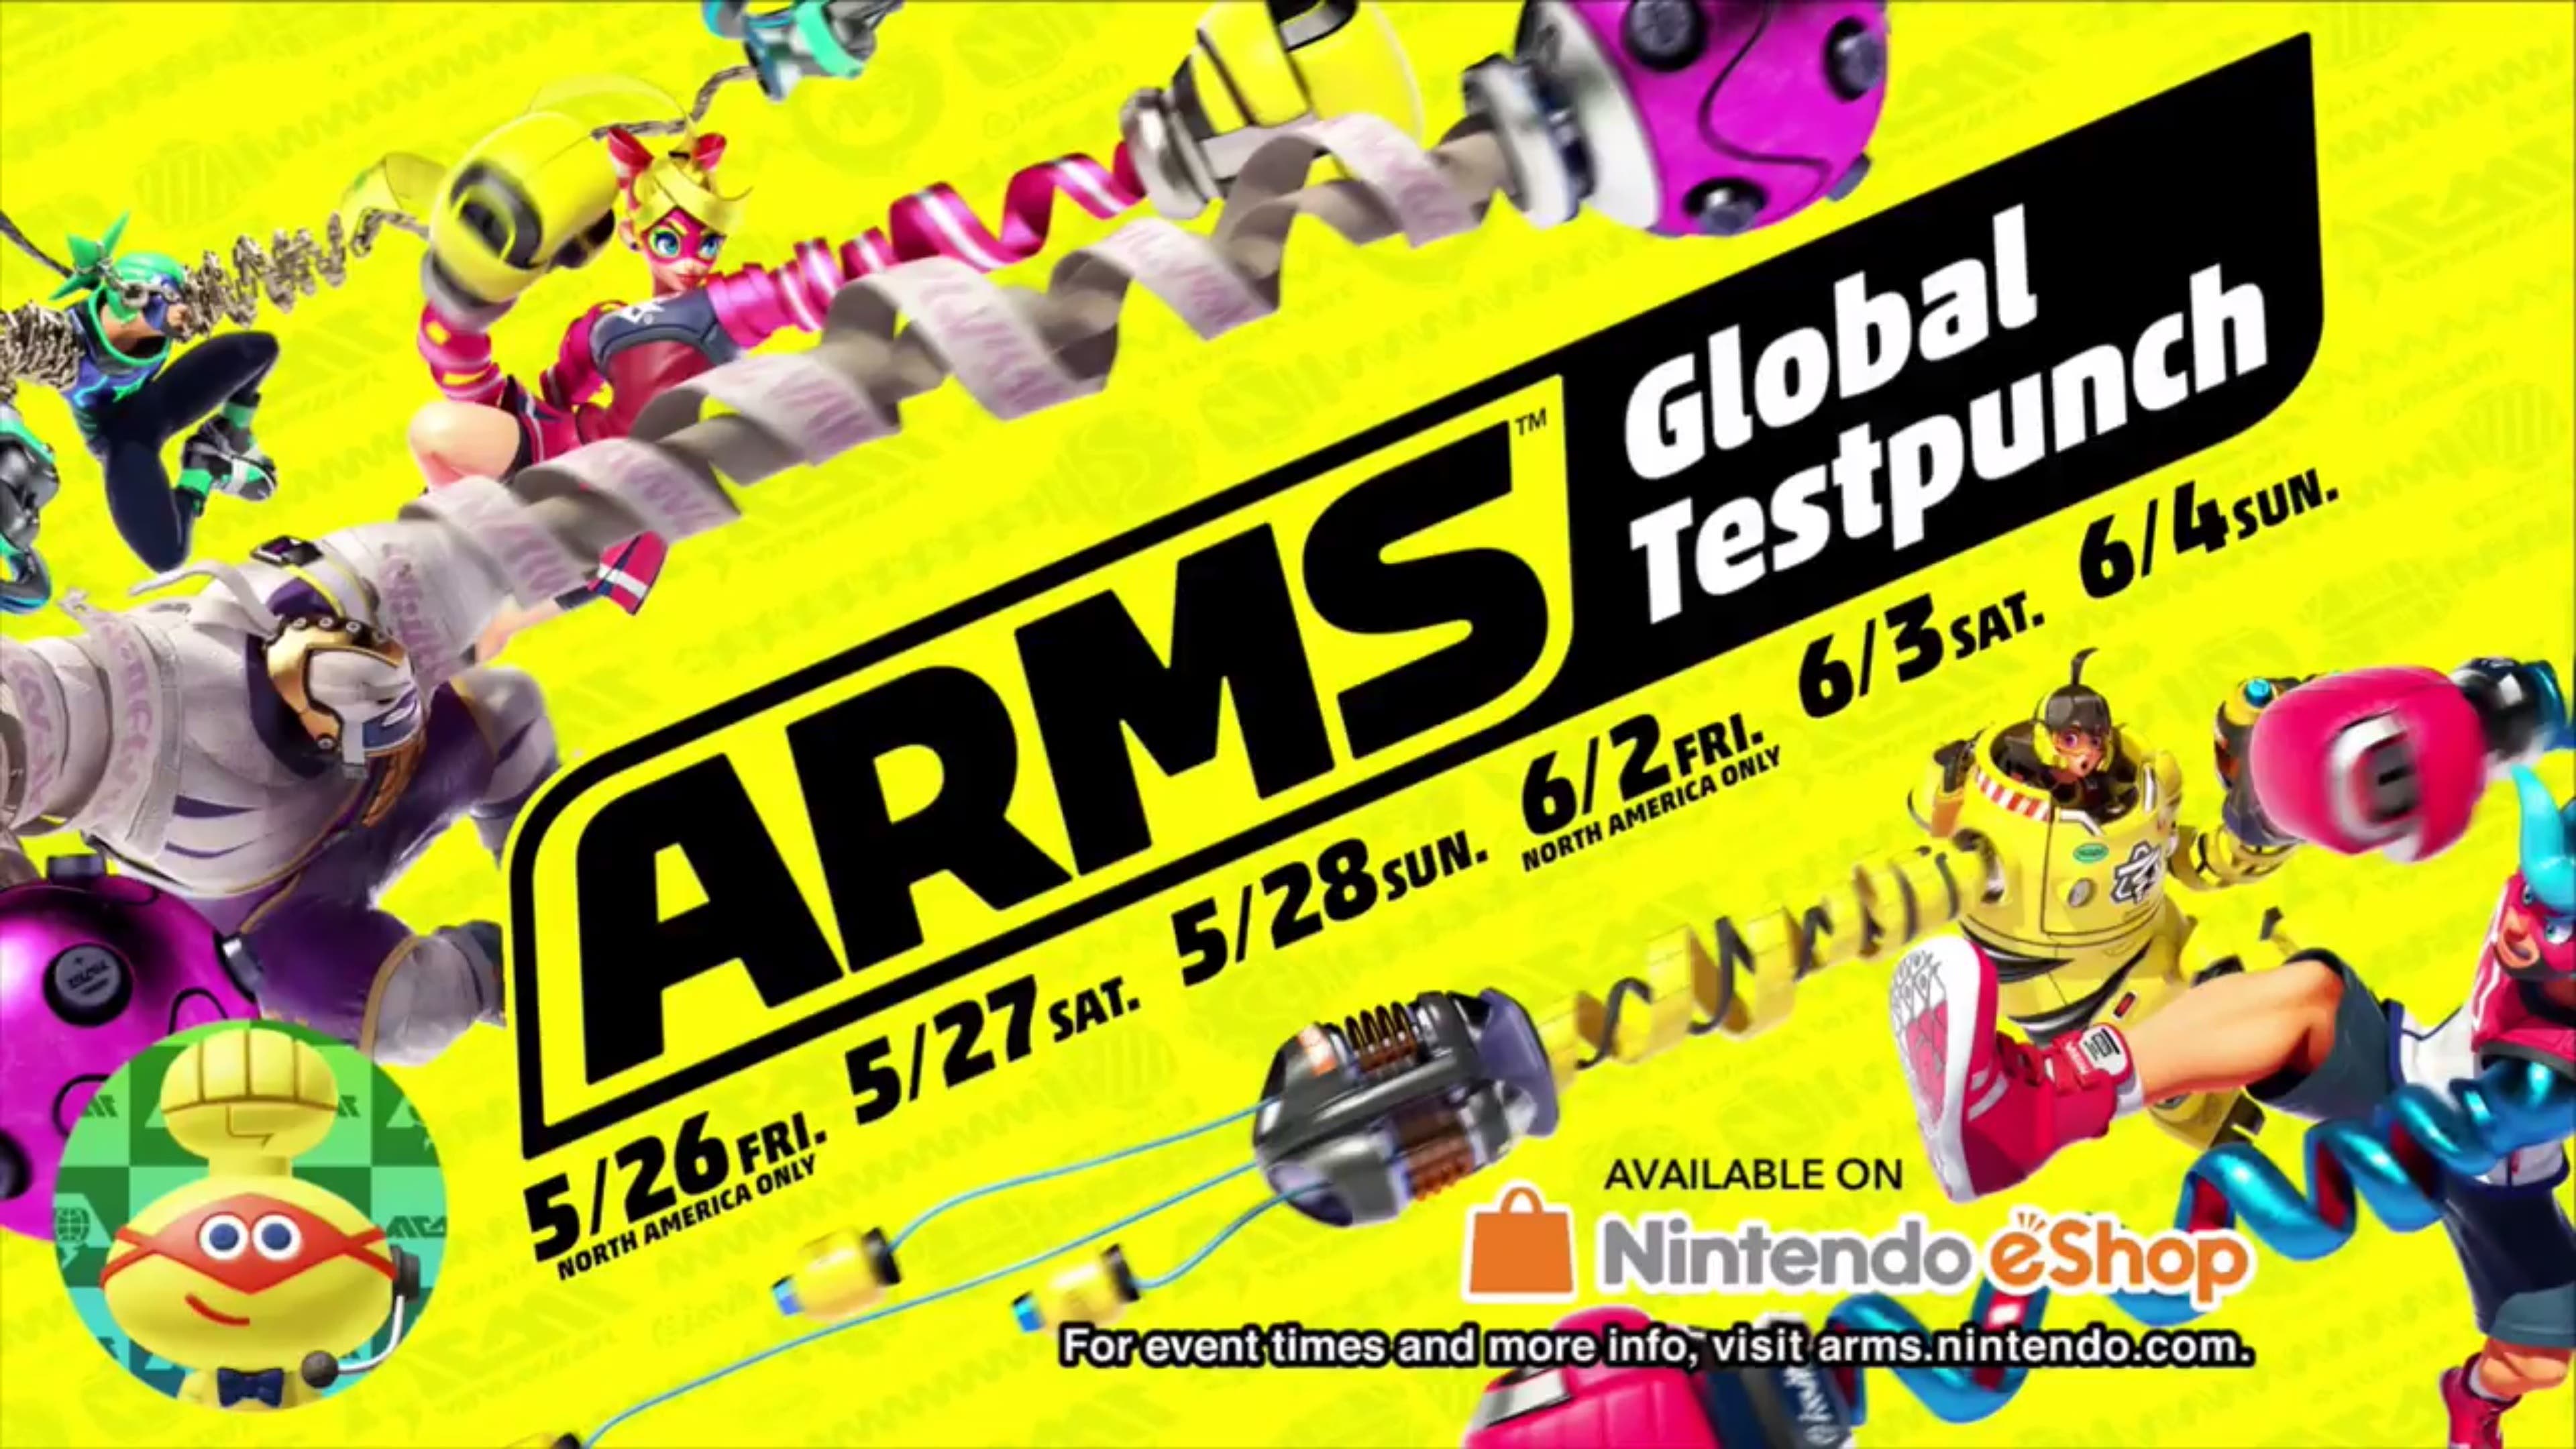 arms-global-testpunch.jpg